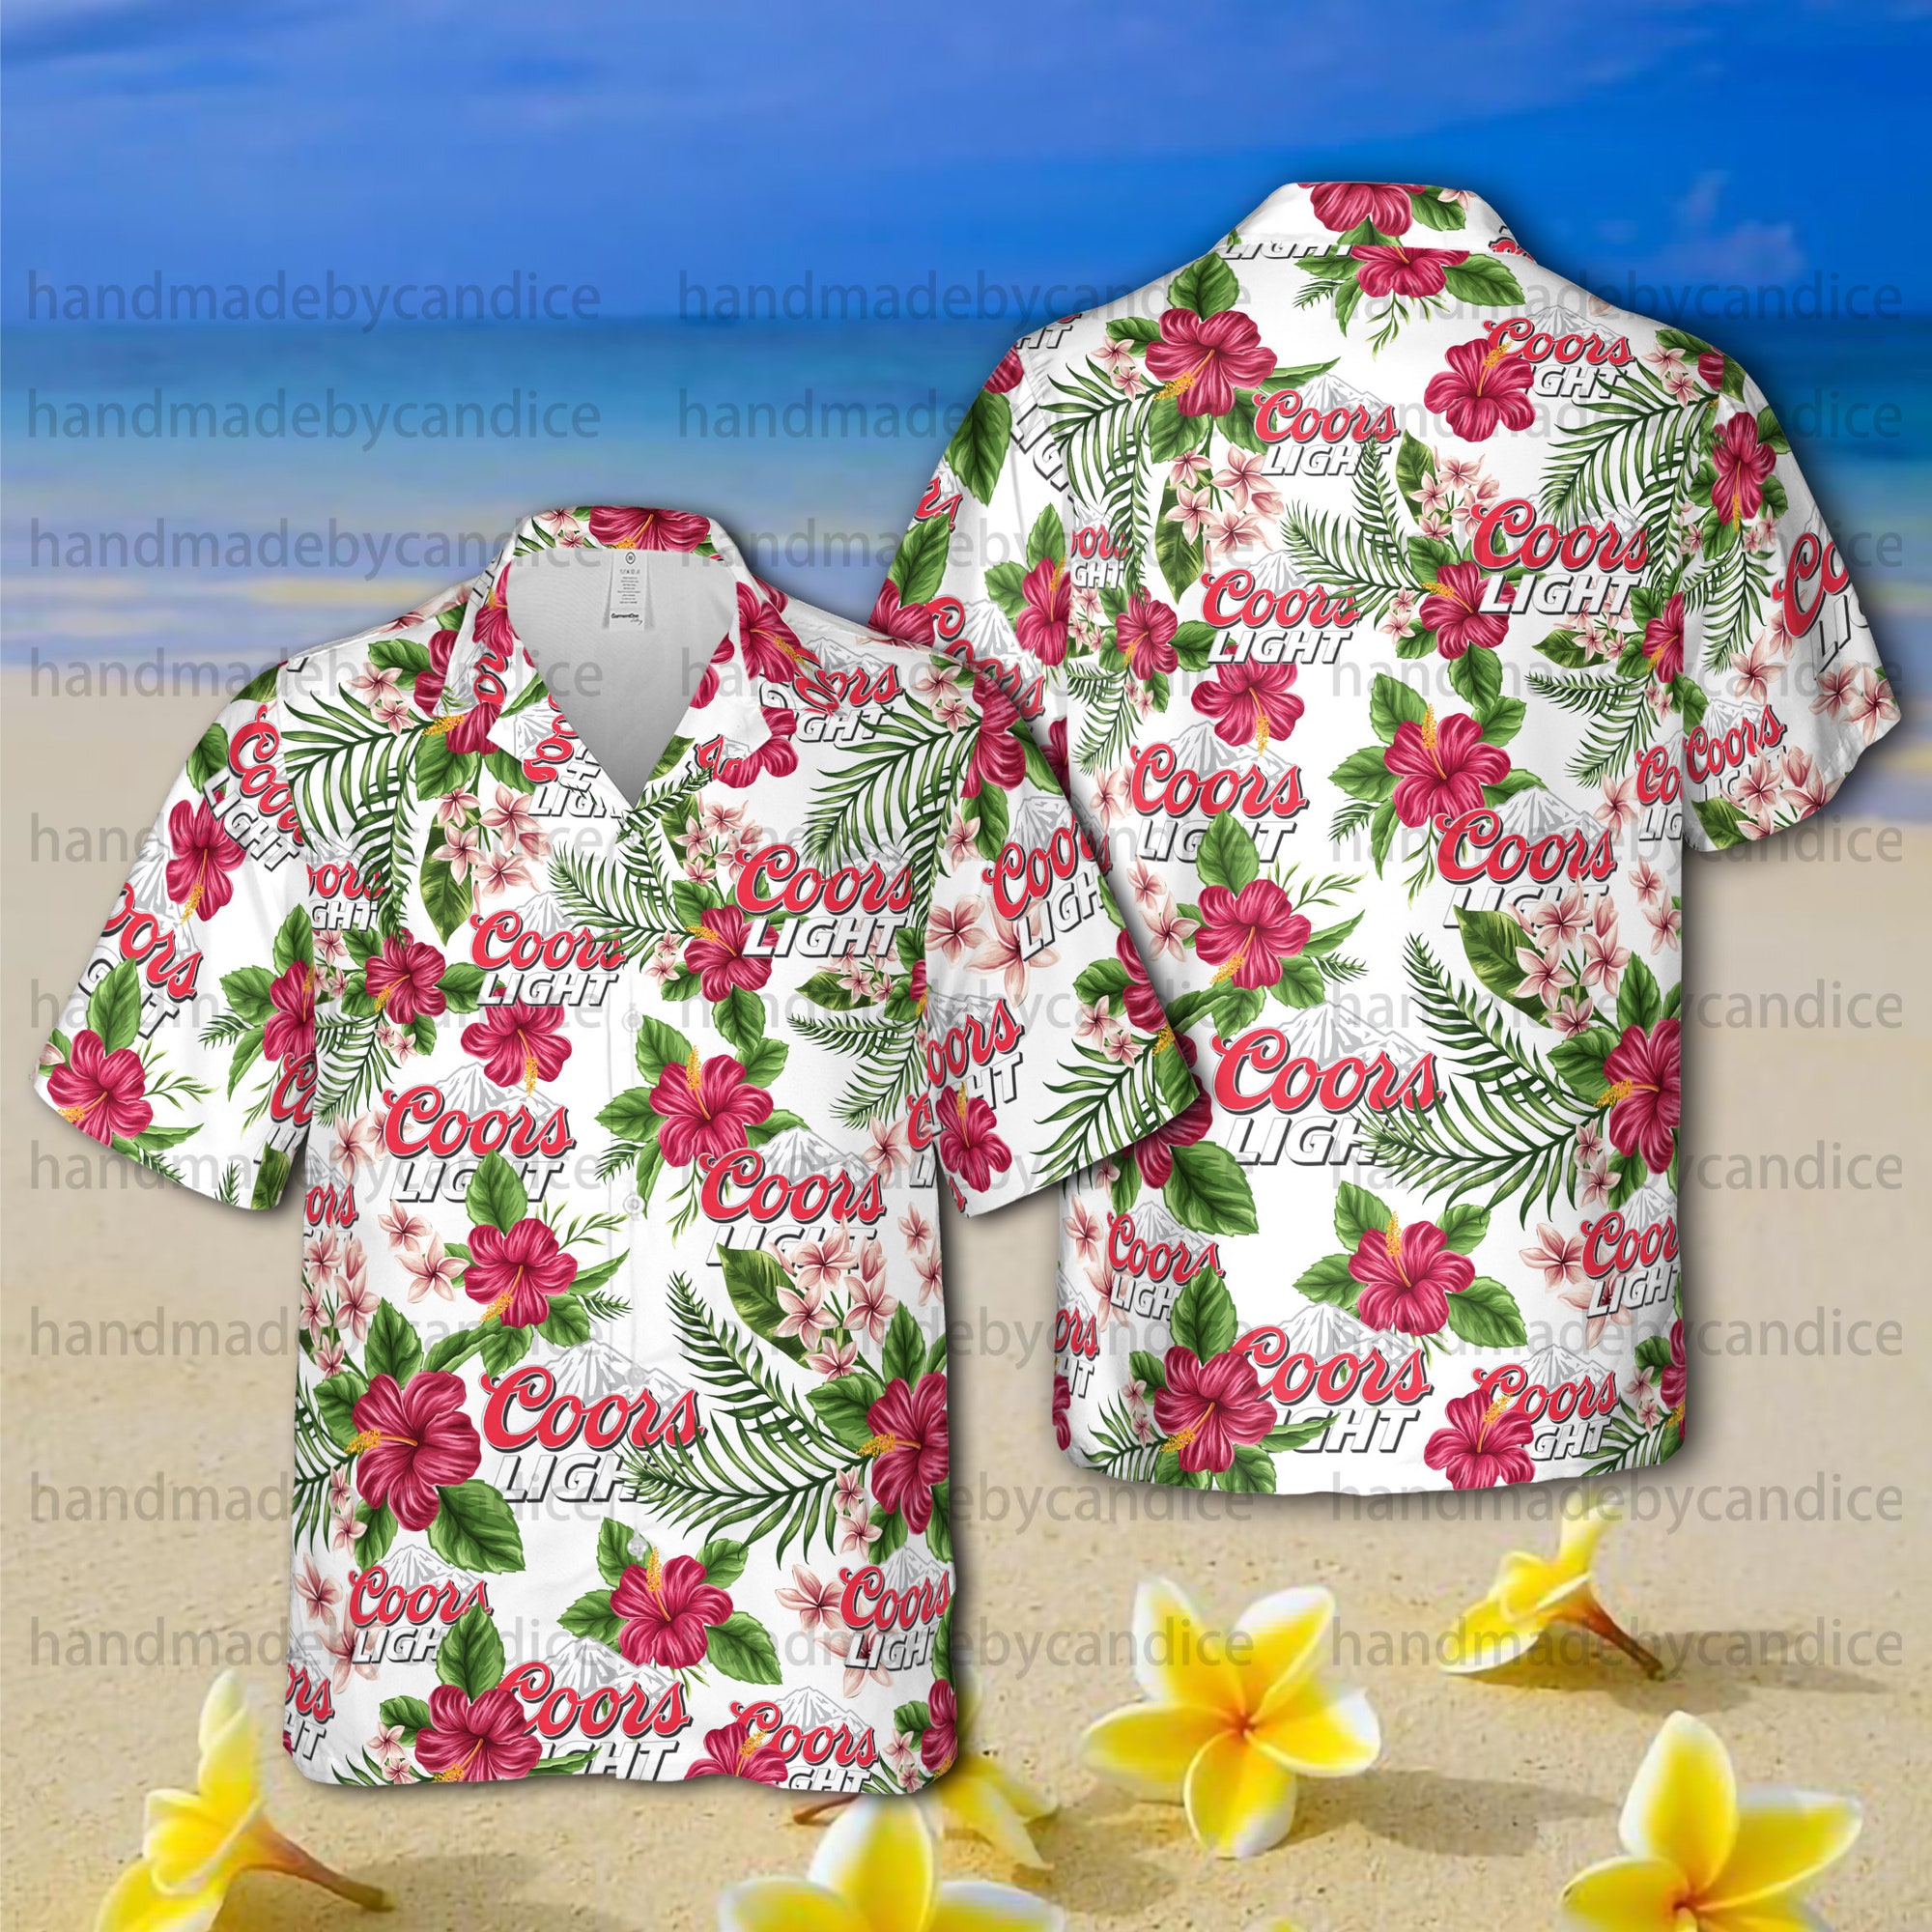 CCOORS Light Unisex Hawaiian Shirt, CCOORS Light Beer Button Up Shirt